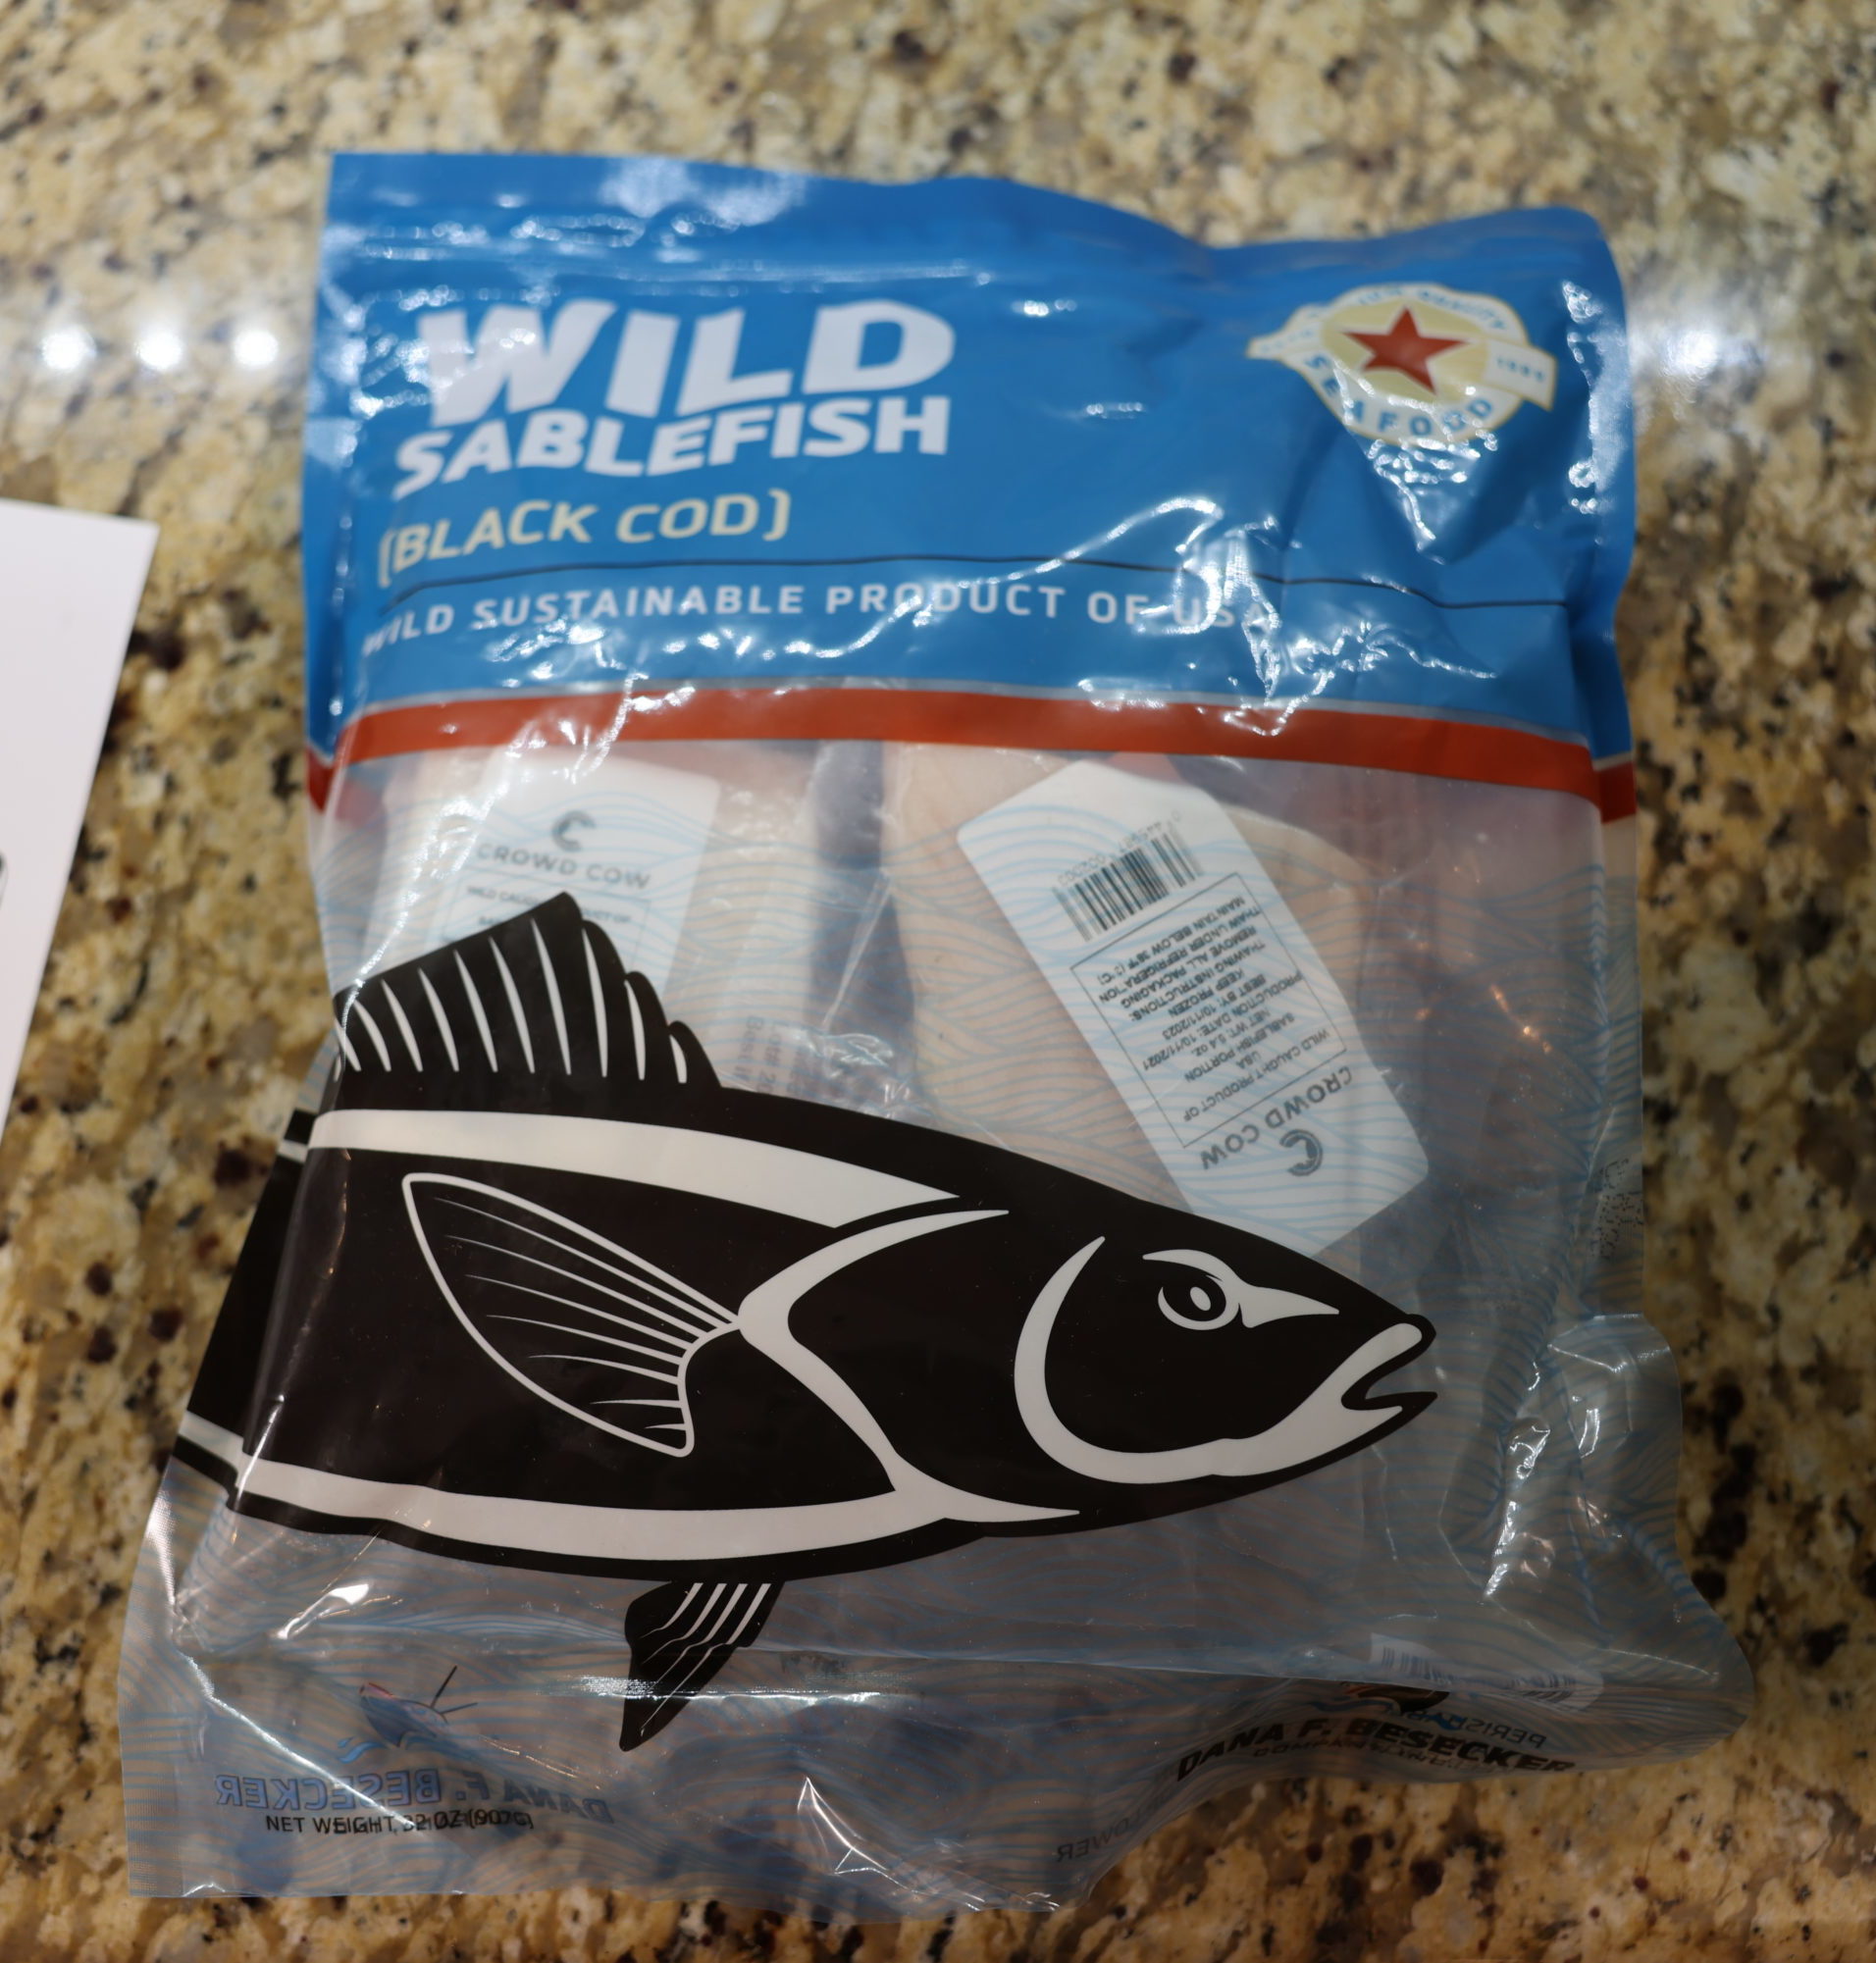 Wild Black Cod (Sablefish)